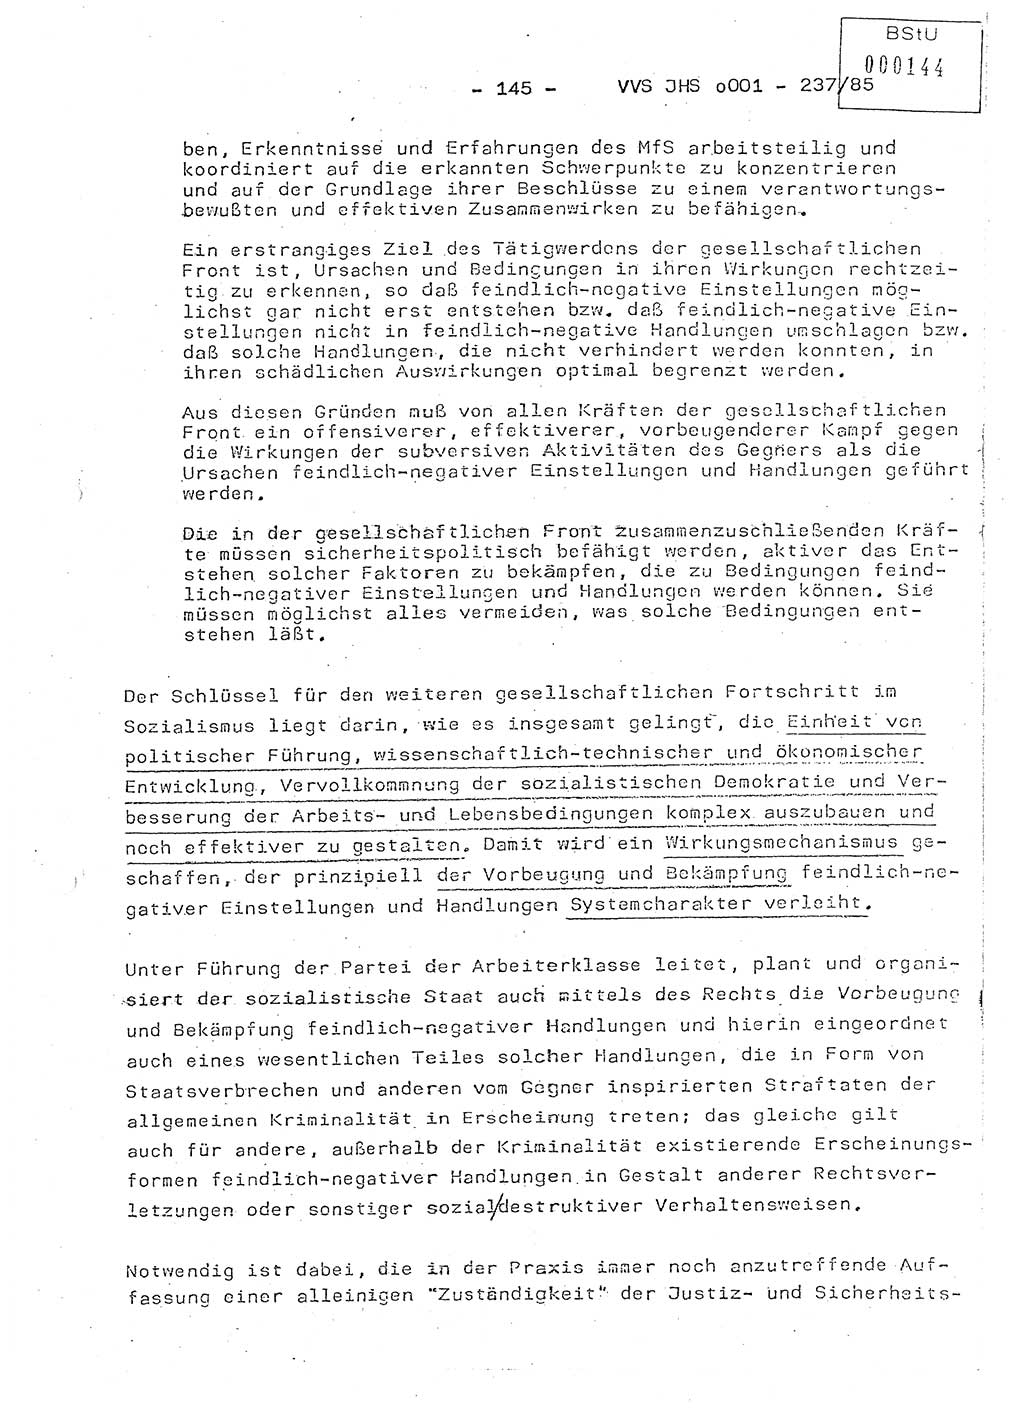 Dissertation Oberstleutnant Peter Jakulski (JHS), Oberstleutnat Christian Rudolph (HA Ⅸ), Major Horst Böttger (ZMD), Major Wolfgang Grüneberg (JHS), Major Albert Meutsch (JHS), Ministerium für Staatssicherheit (MfS) [Deutsche Demokratische Republik (DDR)], Juristische Hochschule (JHS), Vertrauliche Verschlußsache (VVS) o001-237/85, Potsdam 1985, Seite 145 (Diss. MfS DDR JHS VVS o001-237/85 1985, S. 145)